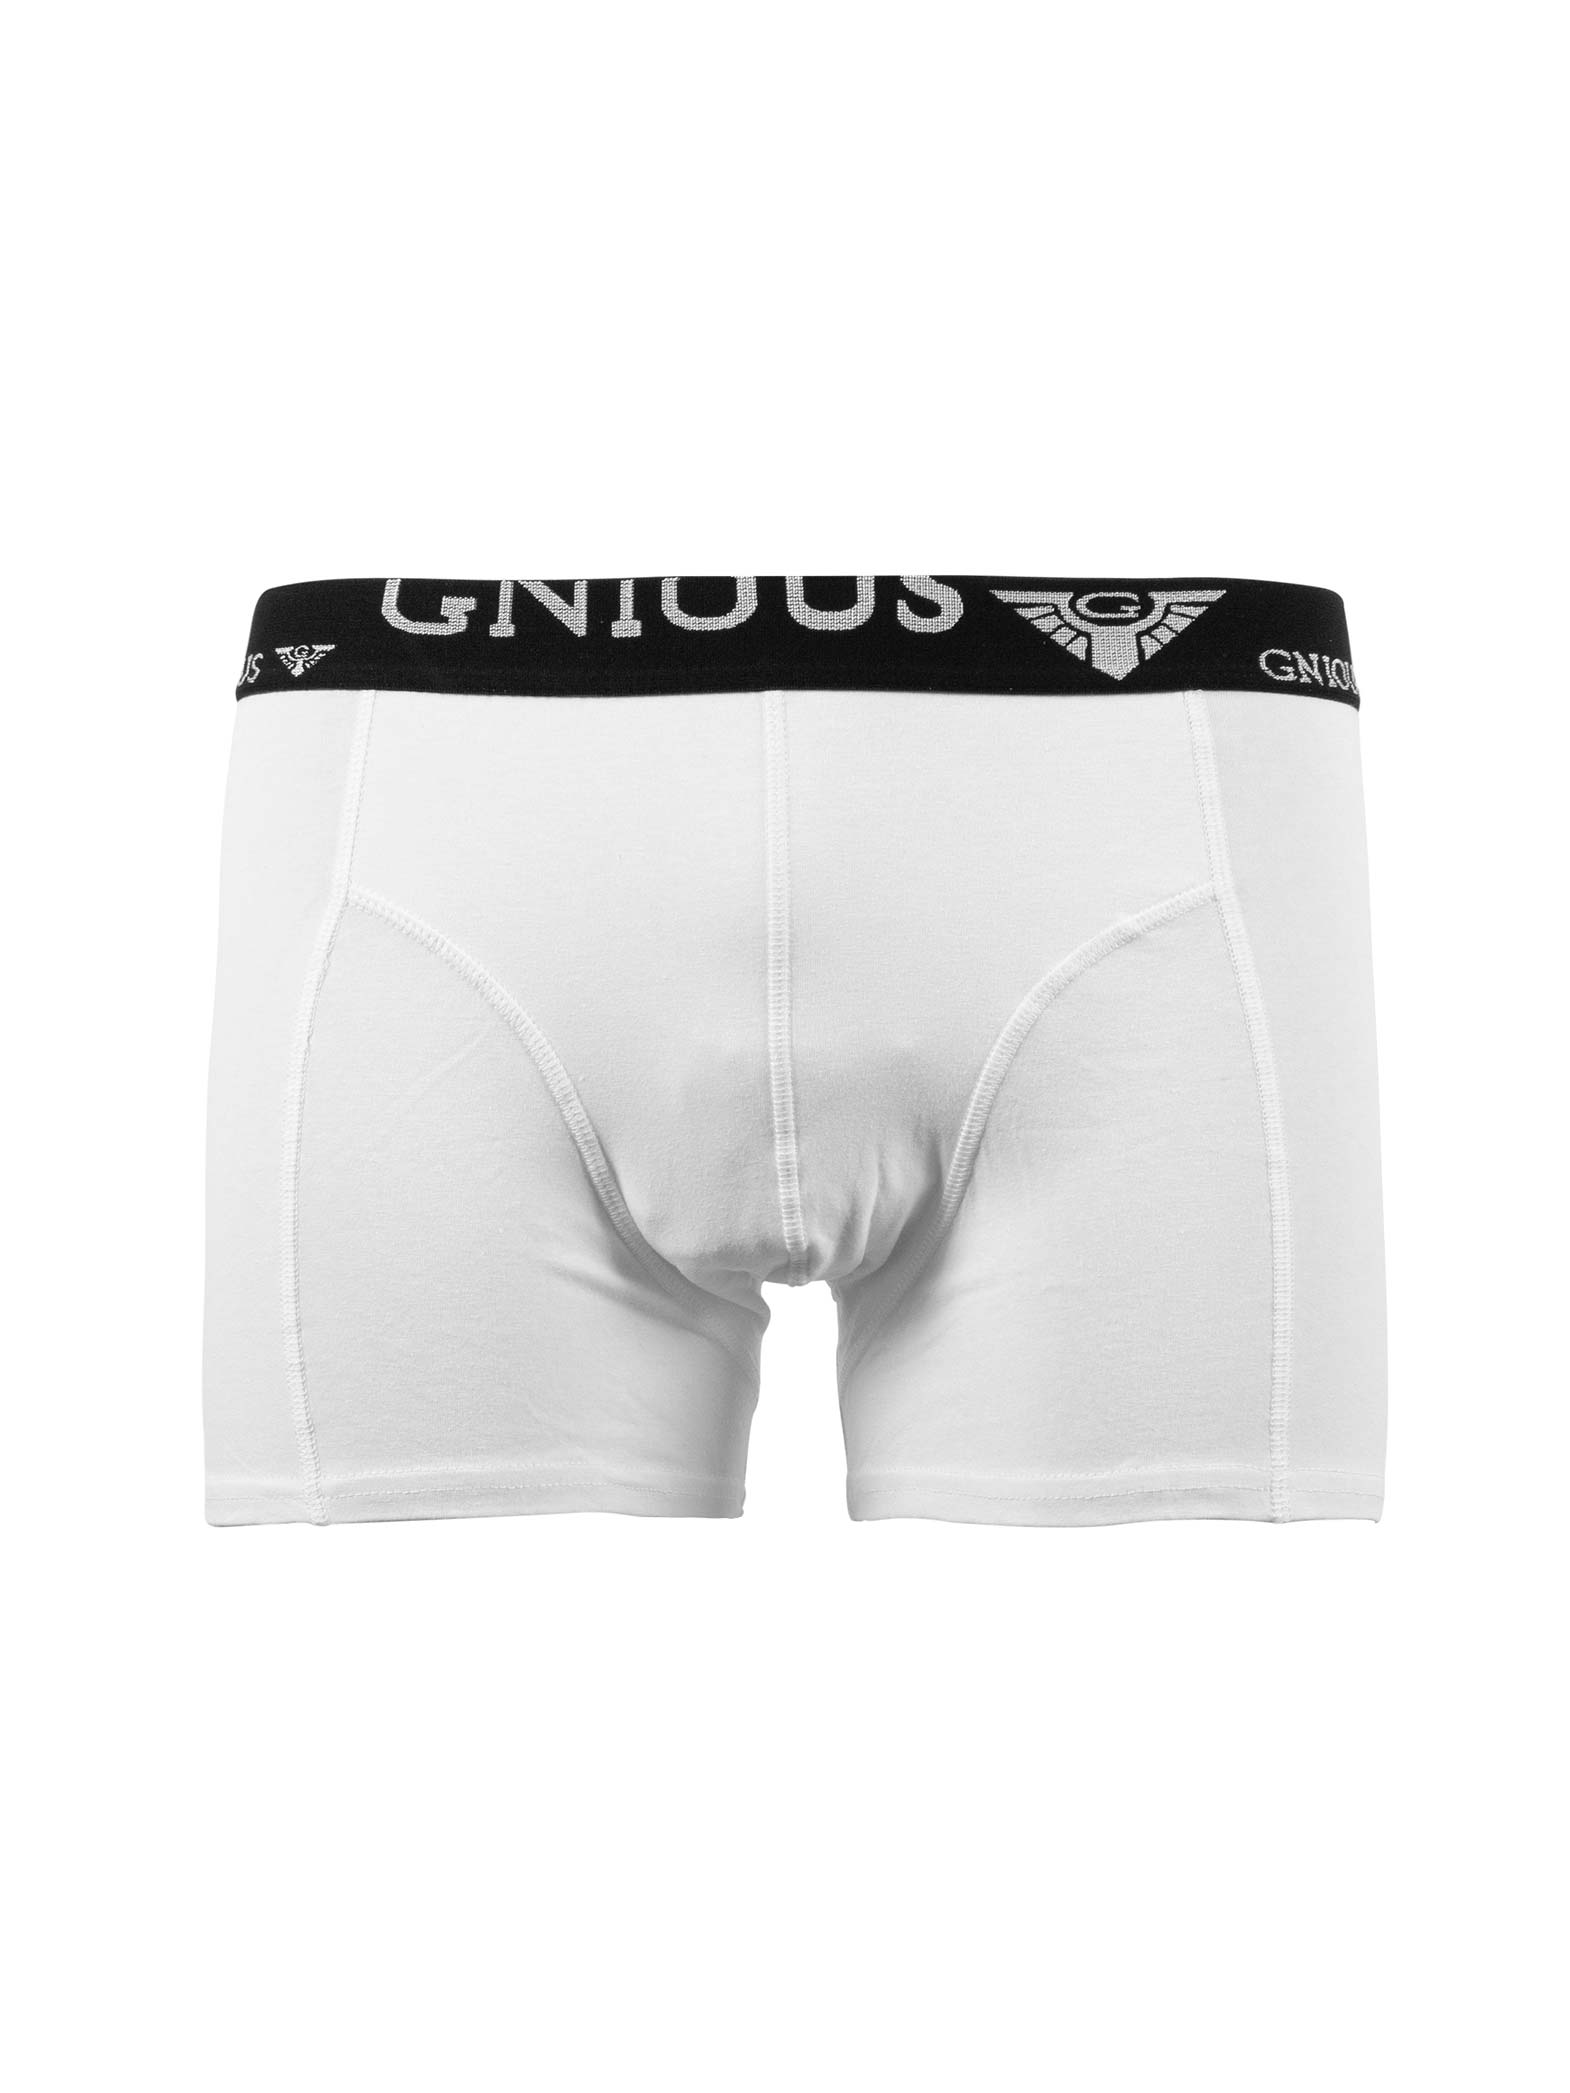 Marcus - Gnious tights | | Underbukser til